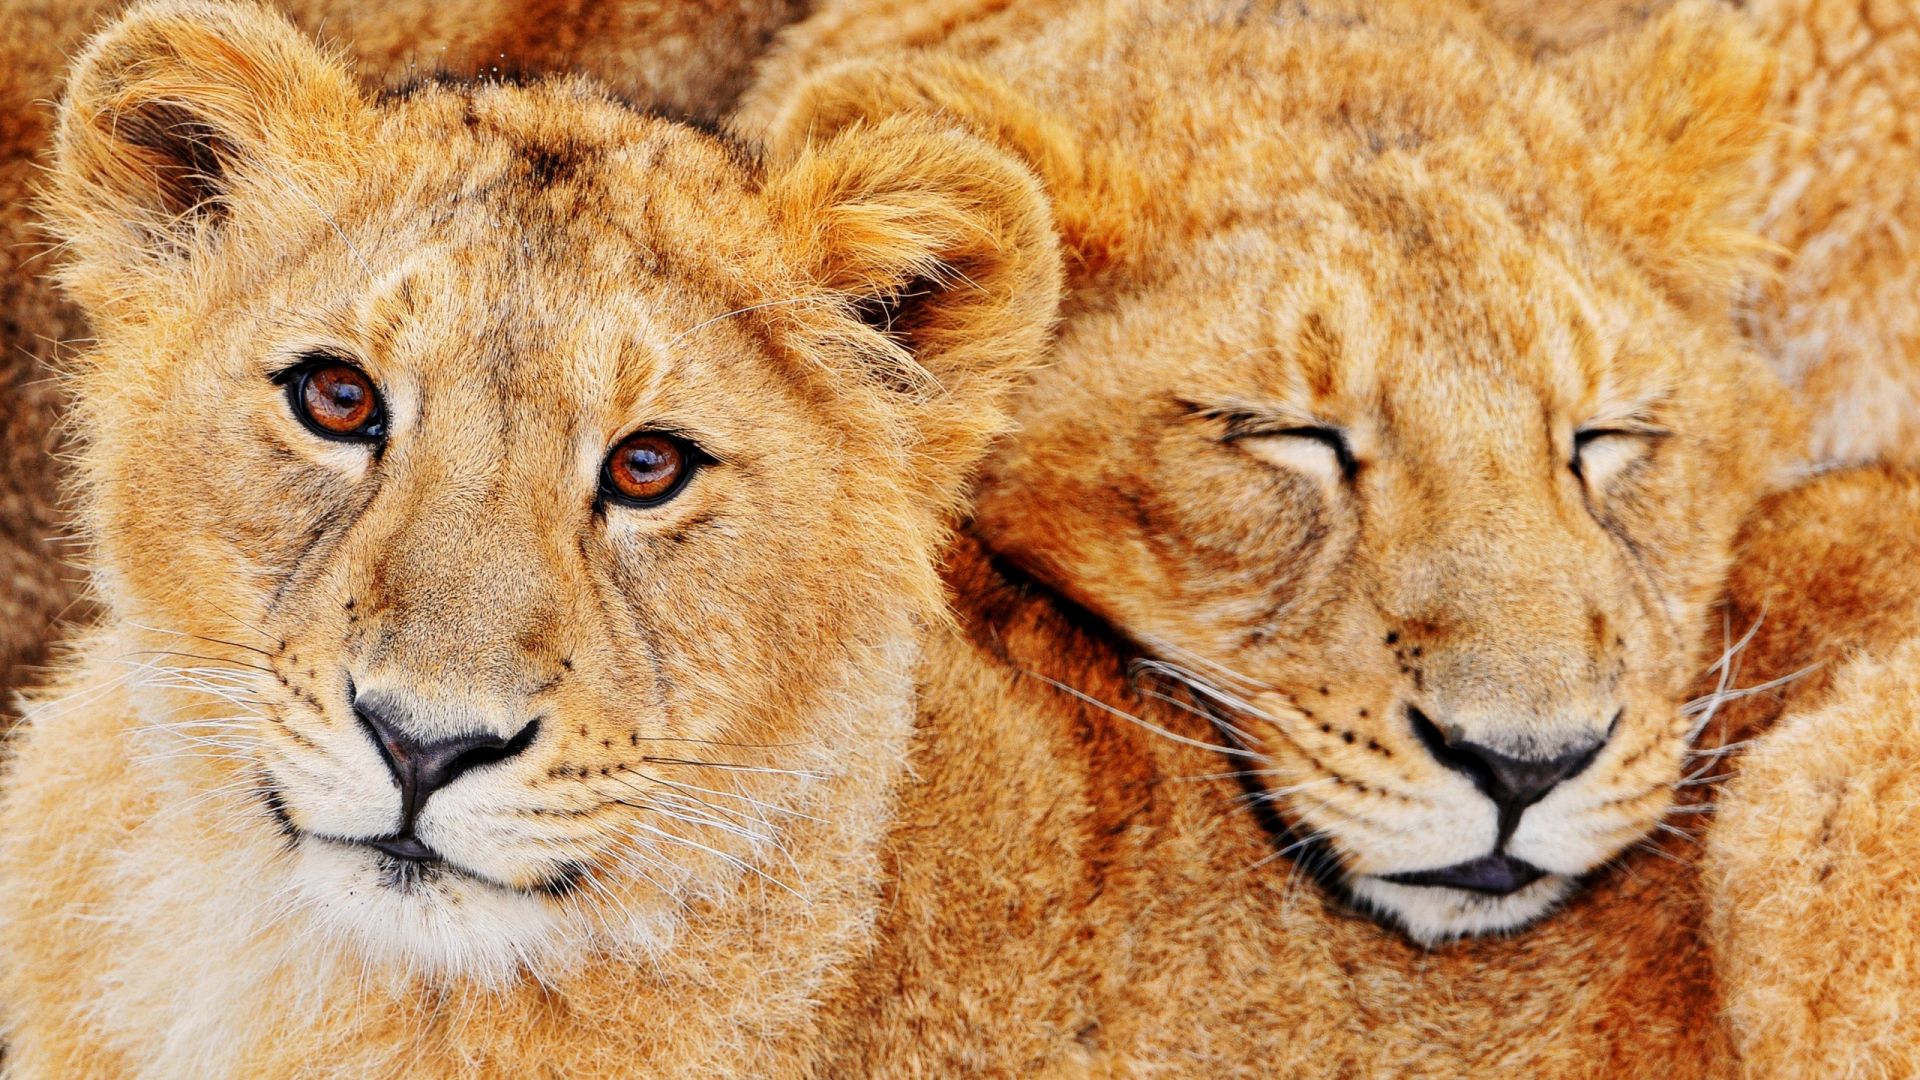 Wallpaper Big cat lions